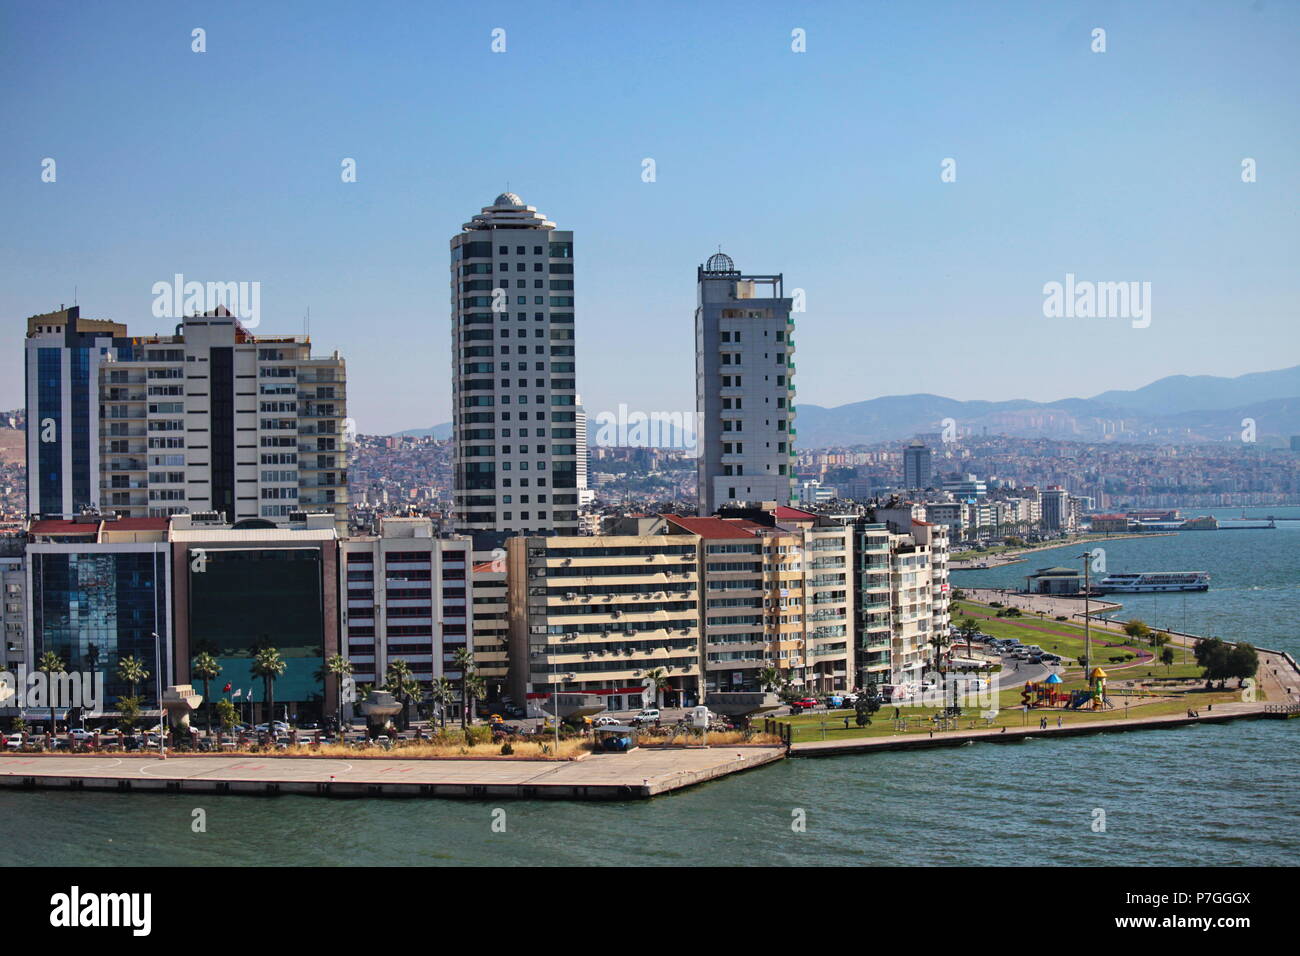 IZMIR, TURQUIE - 22 juin 2011 : vue panoramique du front de mer d'Izmir, Turquie Banque D'Images